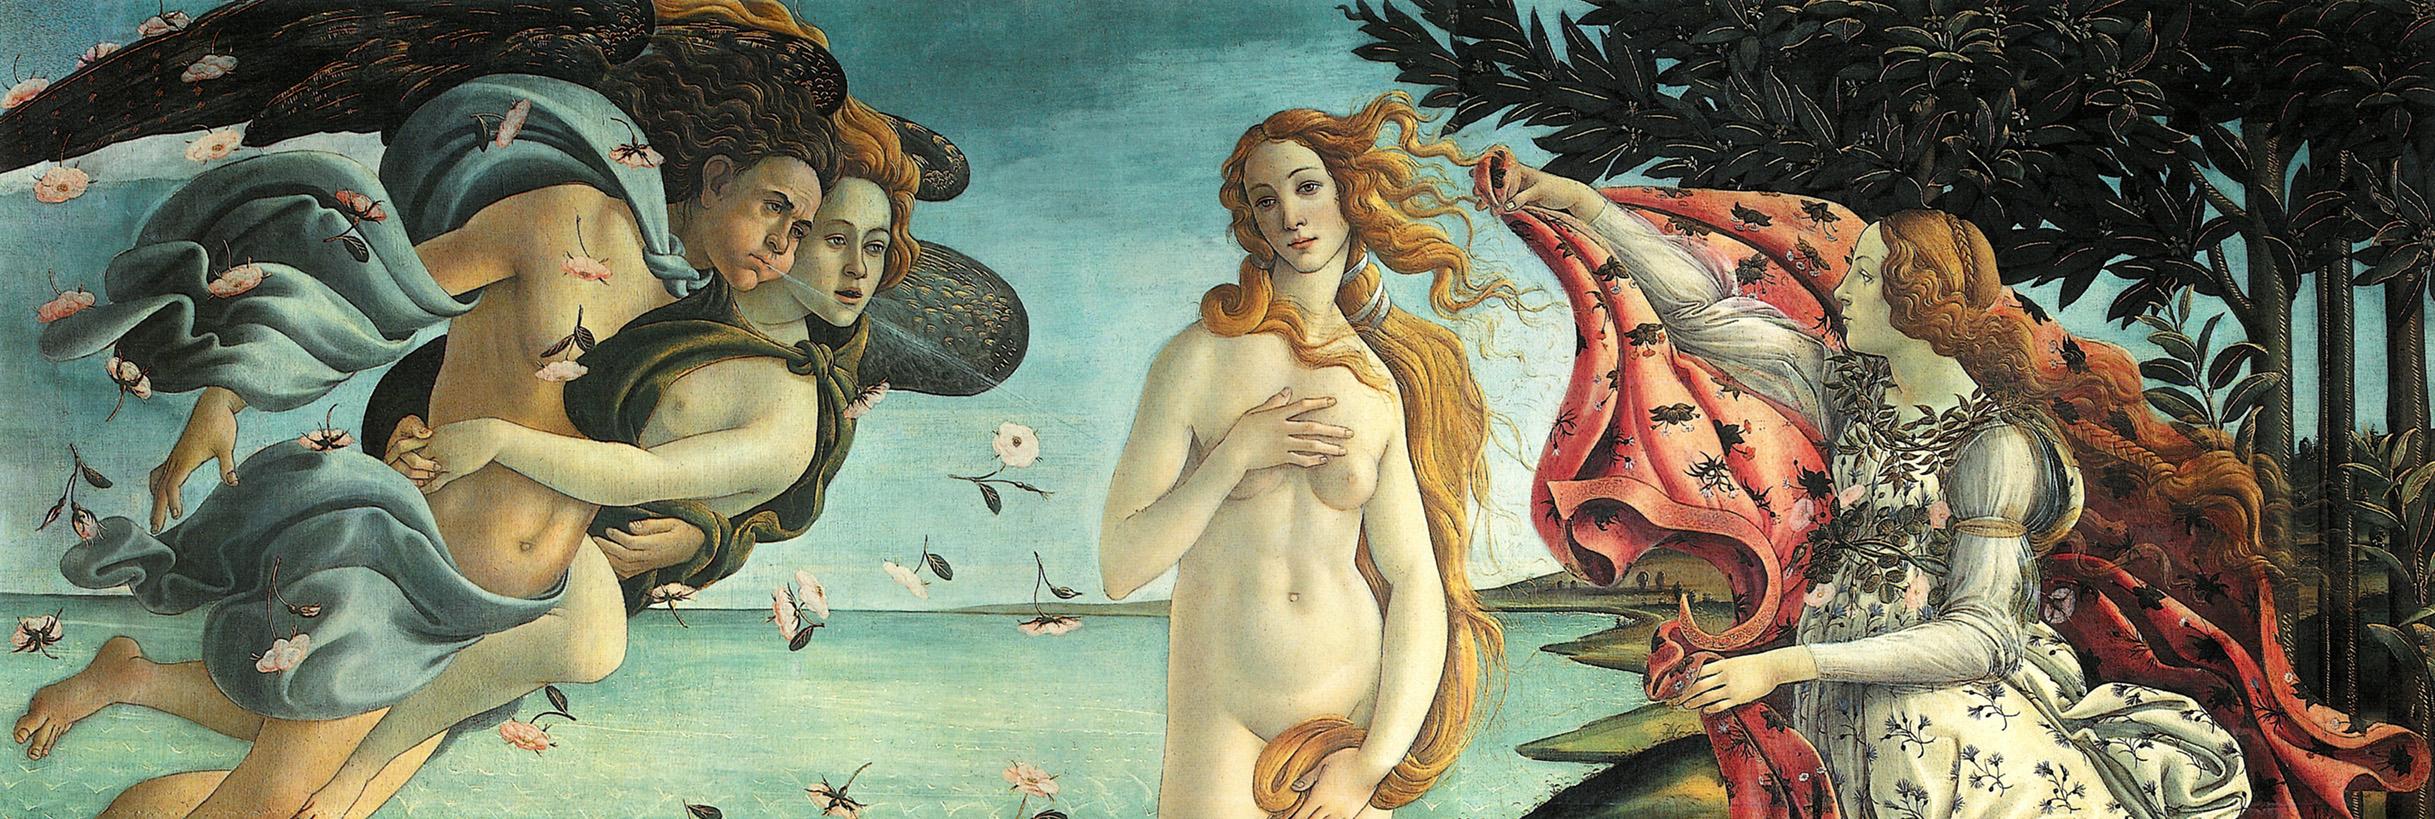 Galleria degli Uffizi - Firenze - La nascita di Venere (Botticelli)